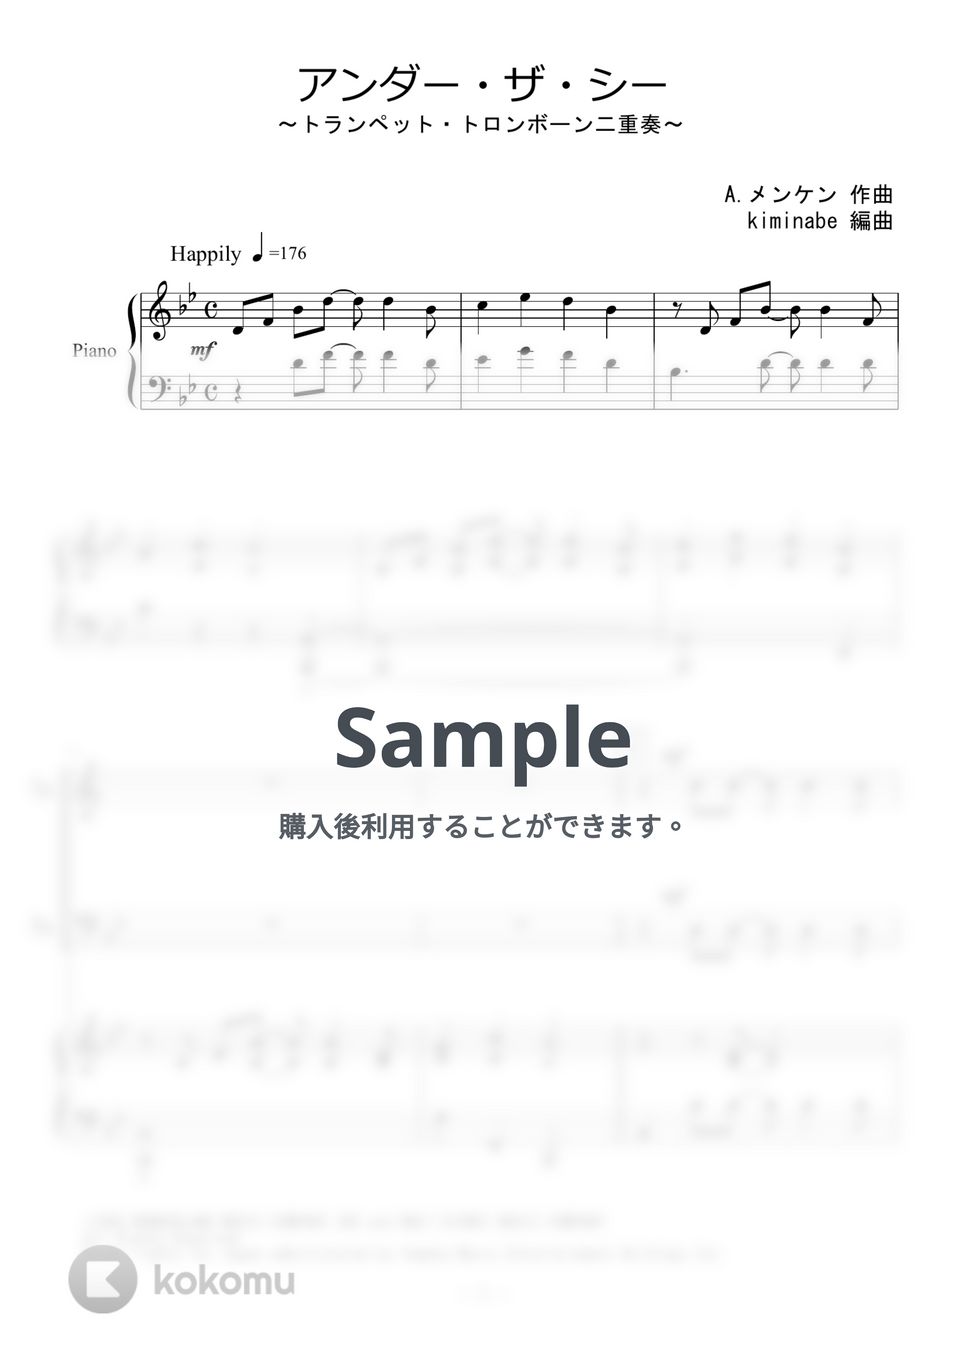 リトルマーメイド - アンダー・ザ・シー (トランペット・トロンボーン二重奏) by kiminabe